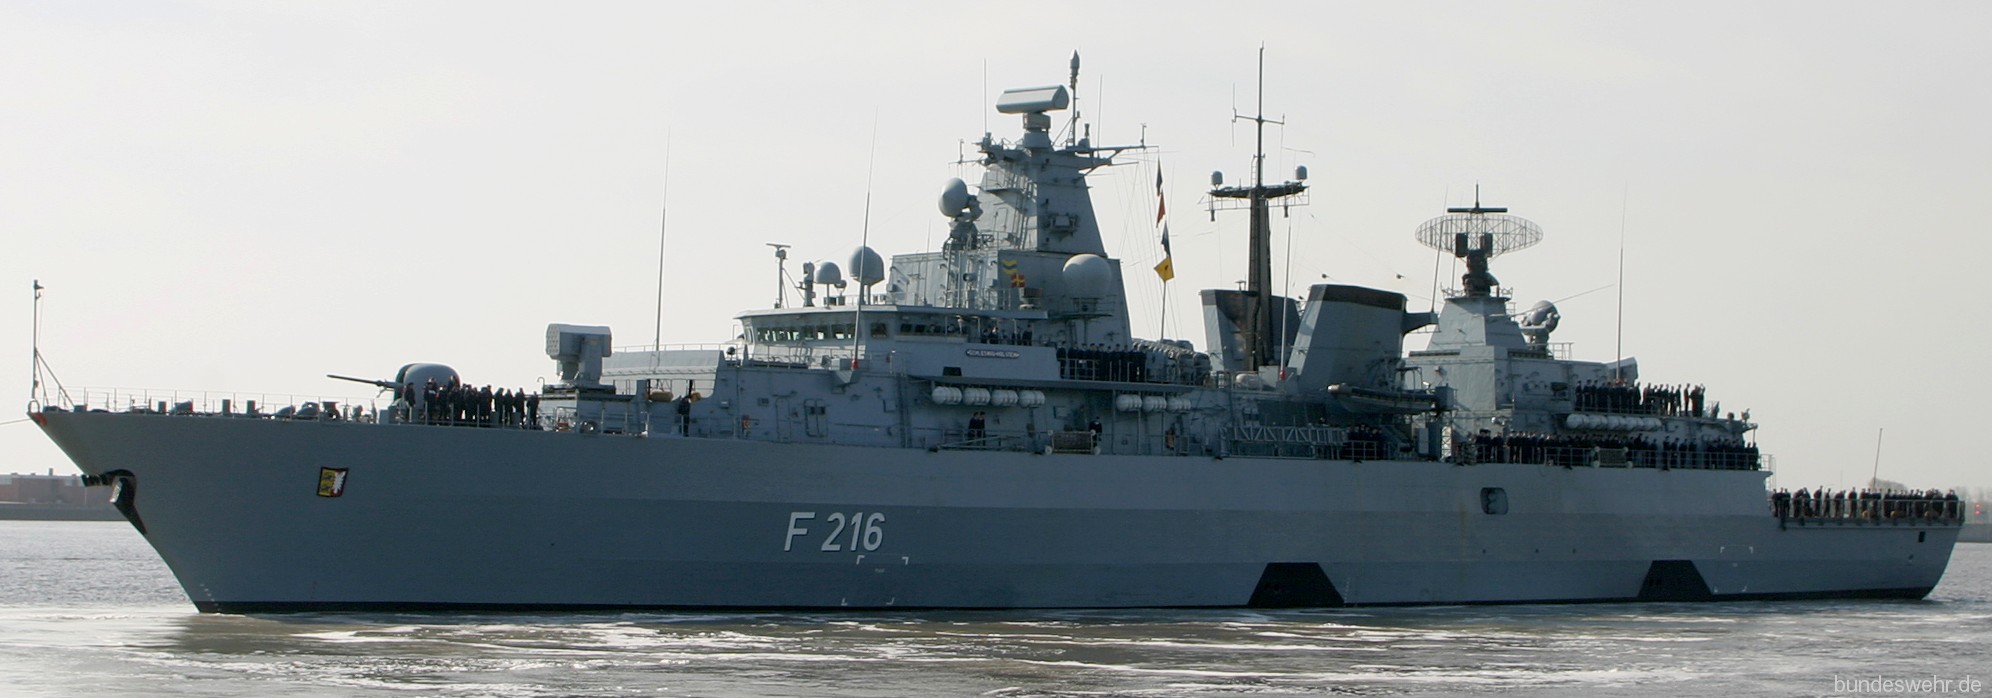 f-216 fgs schleswig holstein type 123 brandenburg class frigate german navy 07